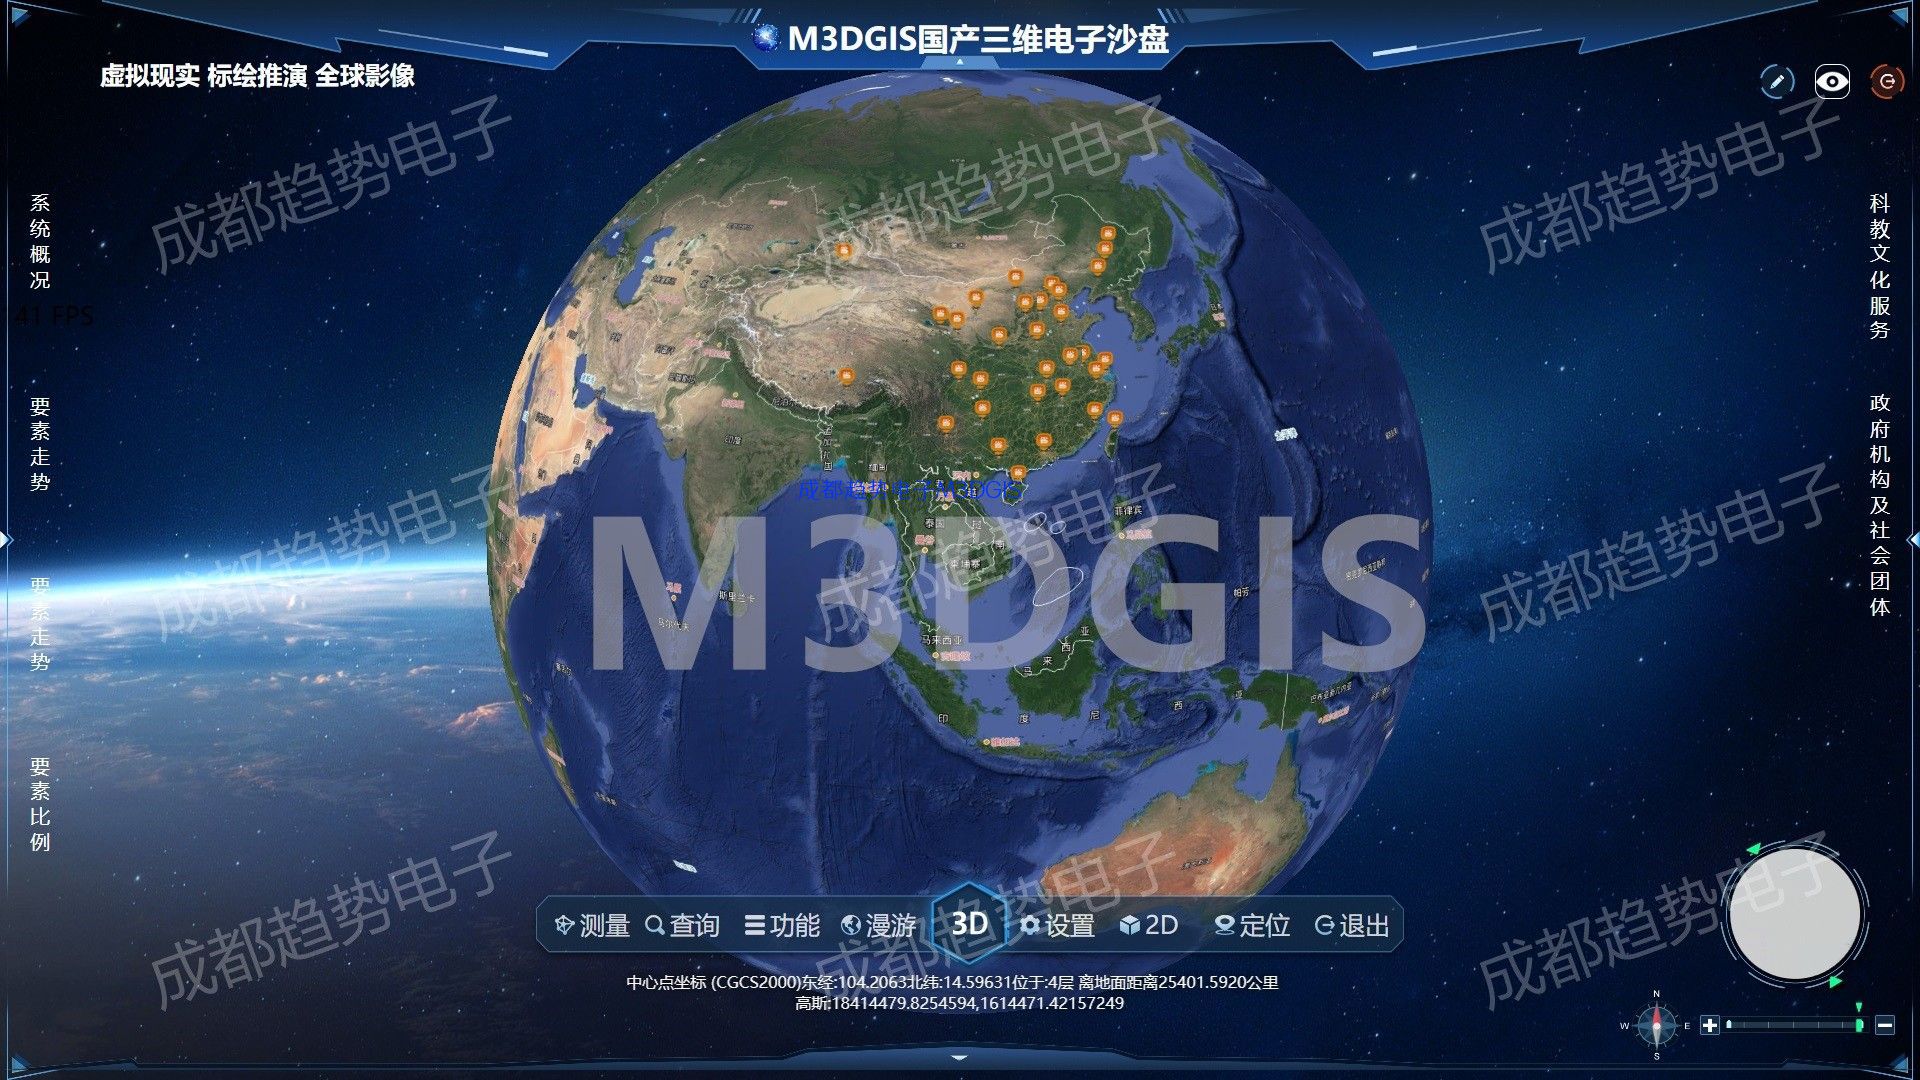 M3D GIS宣传片